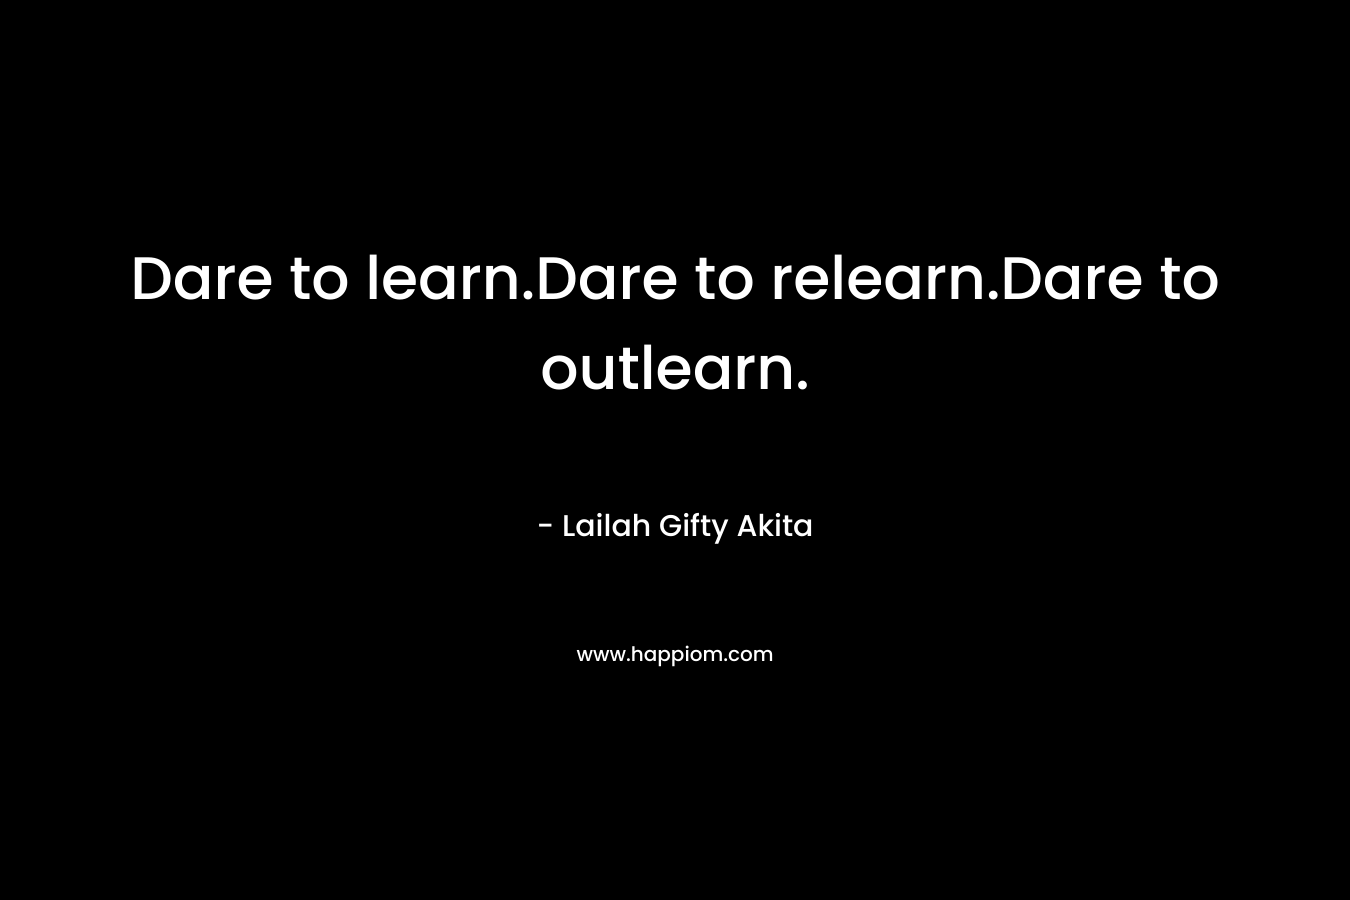 Dare to learn.Dare to relearn.Dare to outlearn.